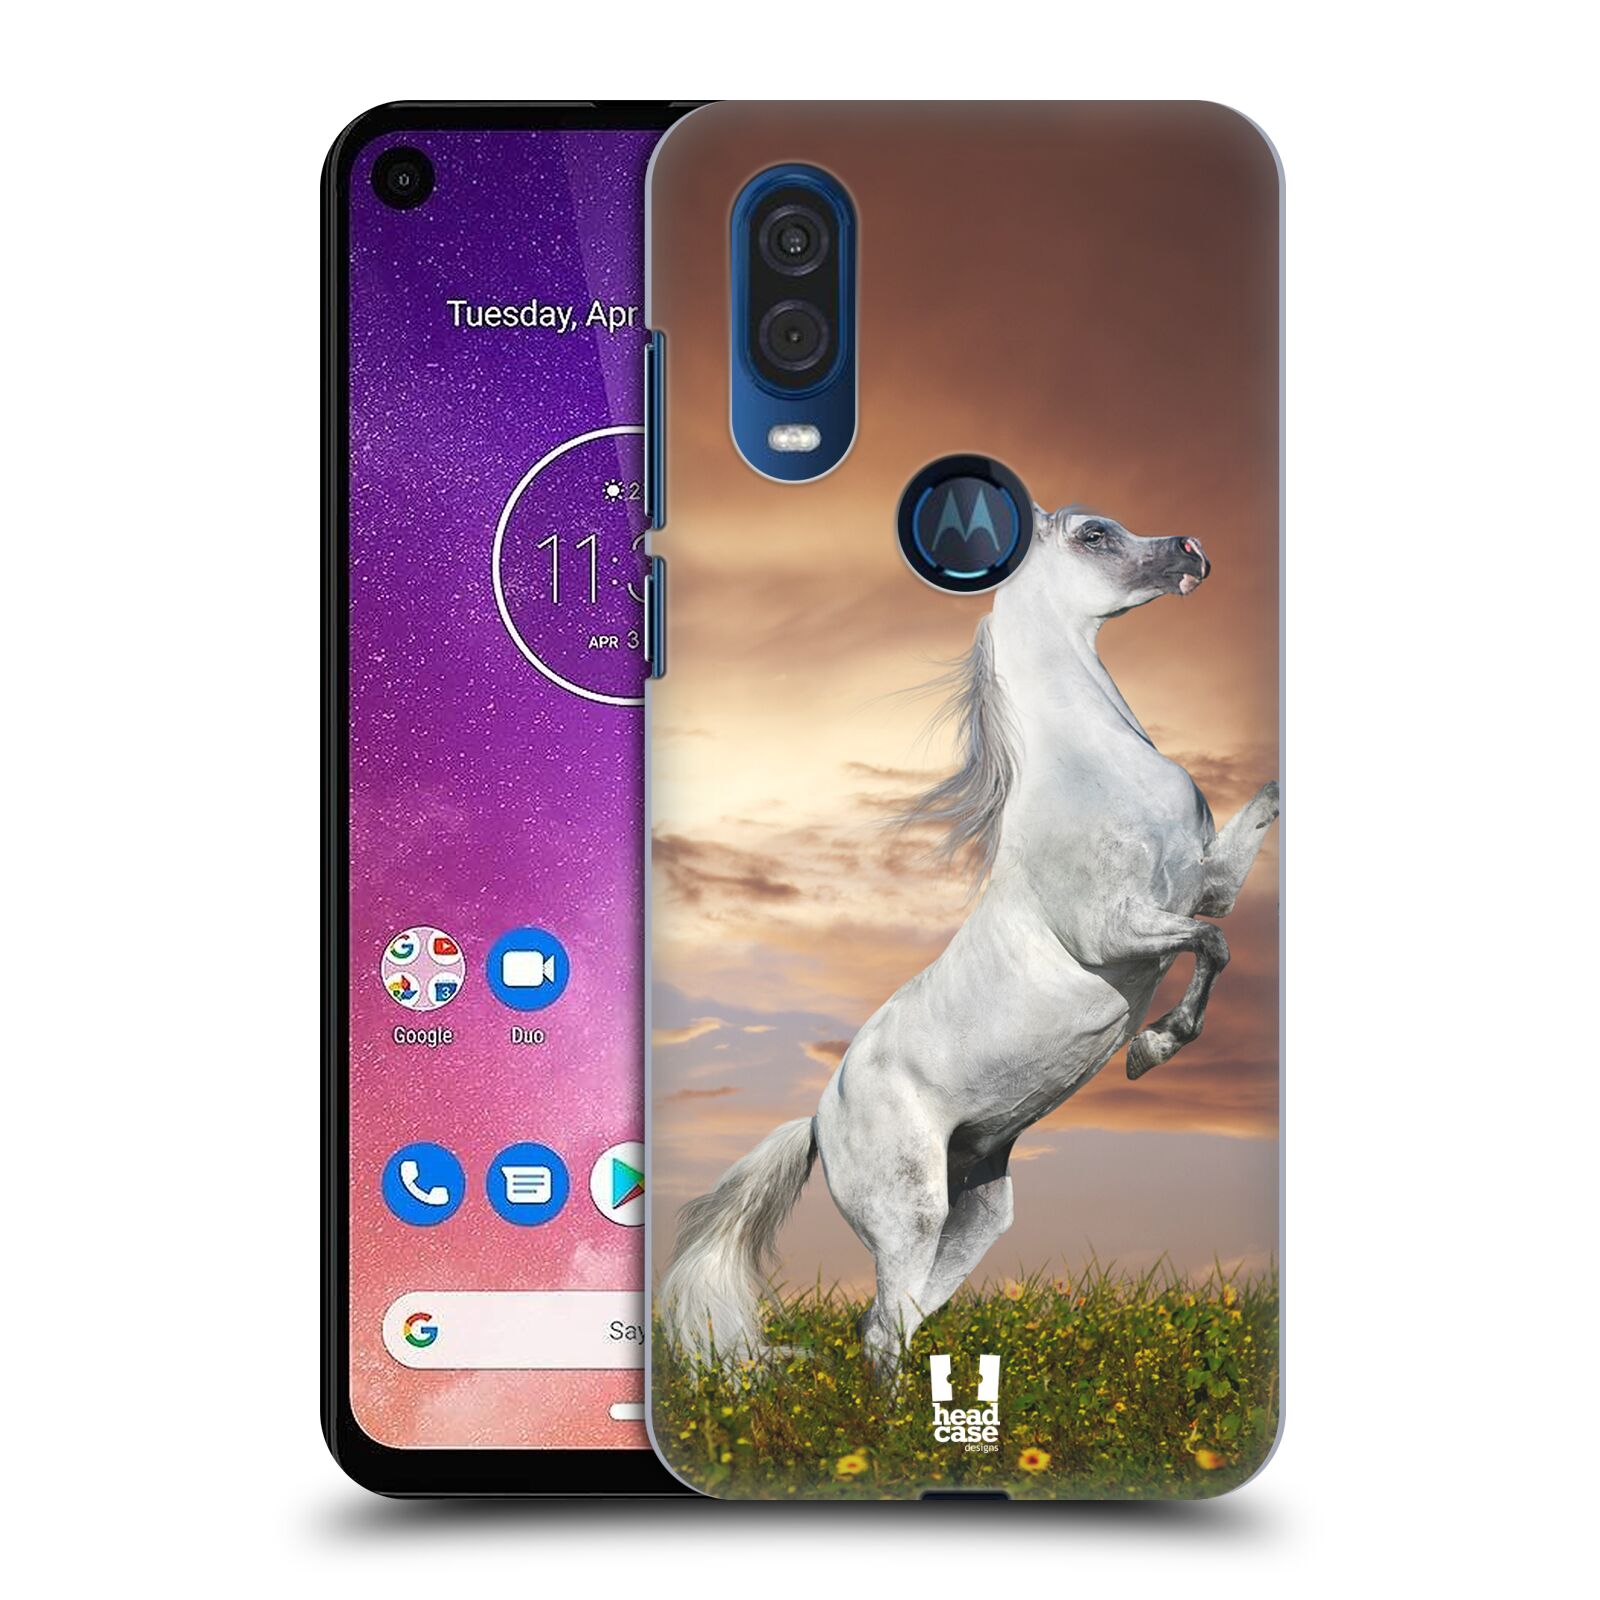 Zadní obal pro mobil Motorola One Vision - HEAD CASE - Svět zvířat divoký kůň